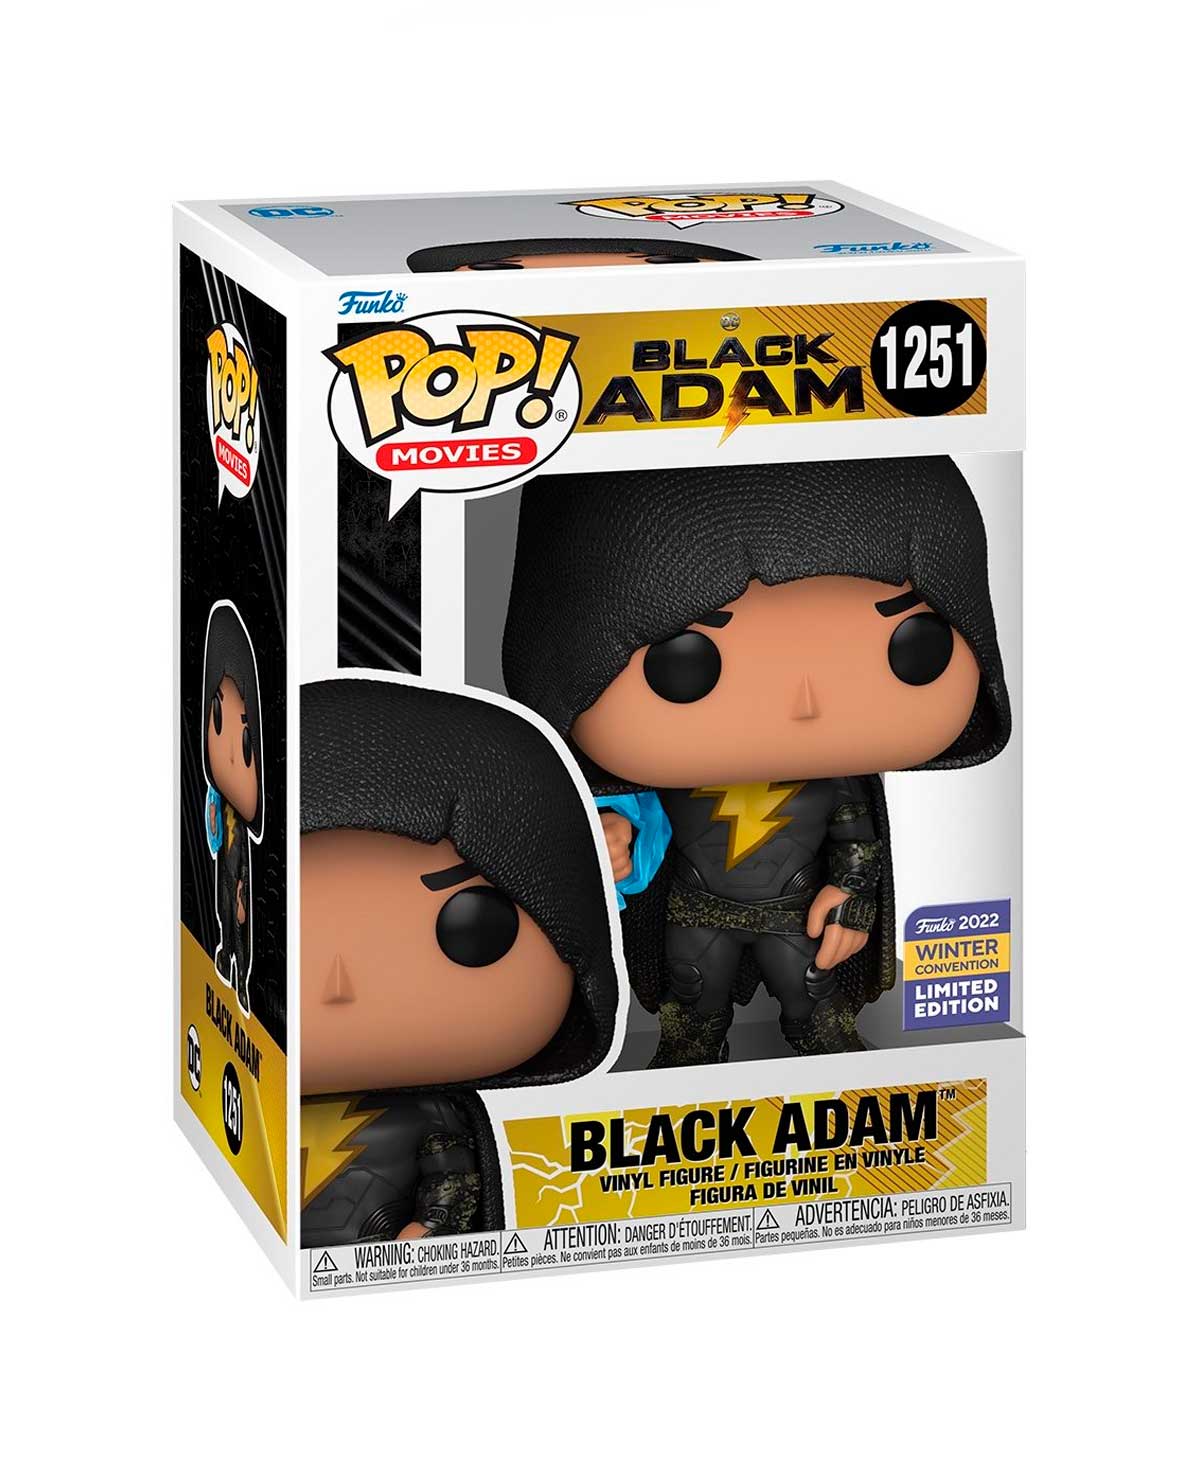 Funko Pop DC Black Adam 1251 Black Addam Exclusivo Winter Convention 2022